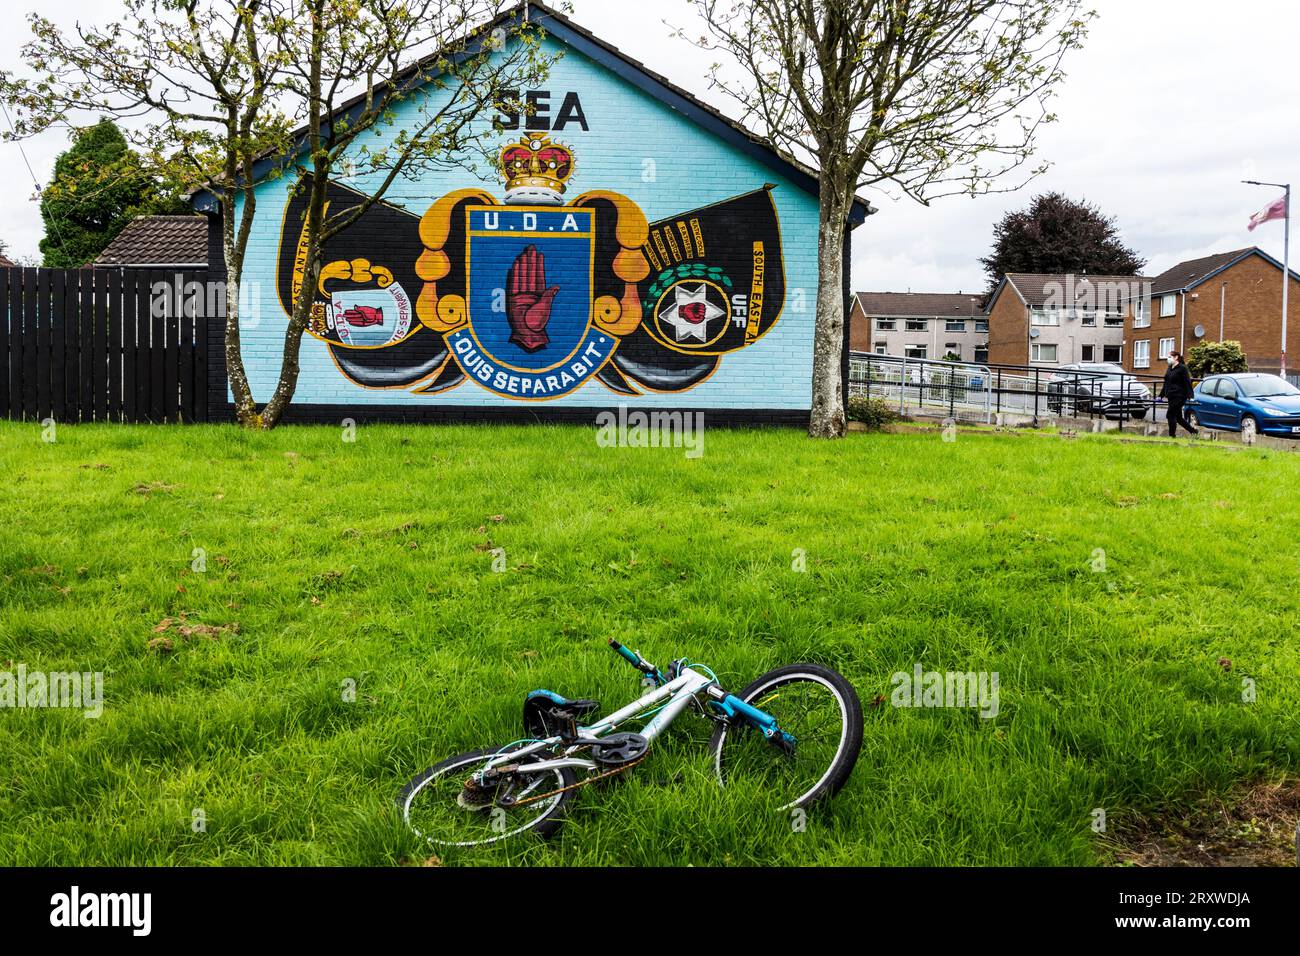 Murale lealista per UDA - Ulster Defence Association, Ballyclare, Contea di Antrim, Irlanda del Nord. Foto Stock